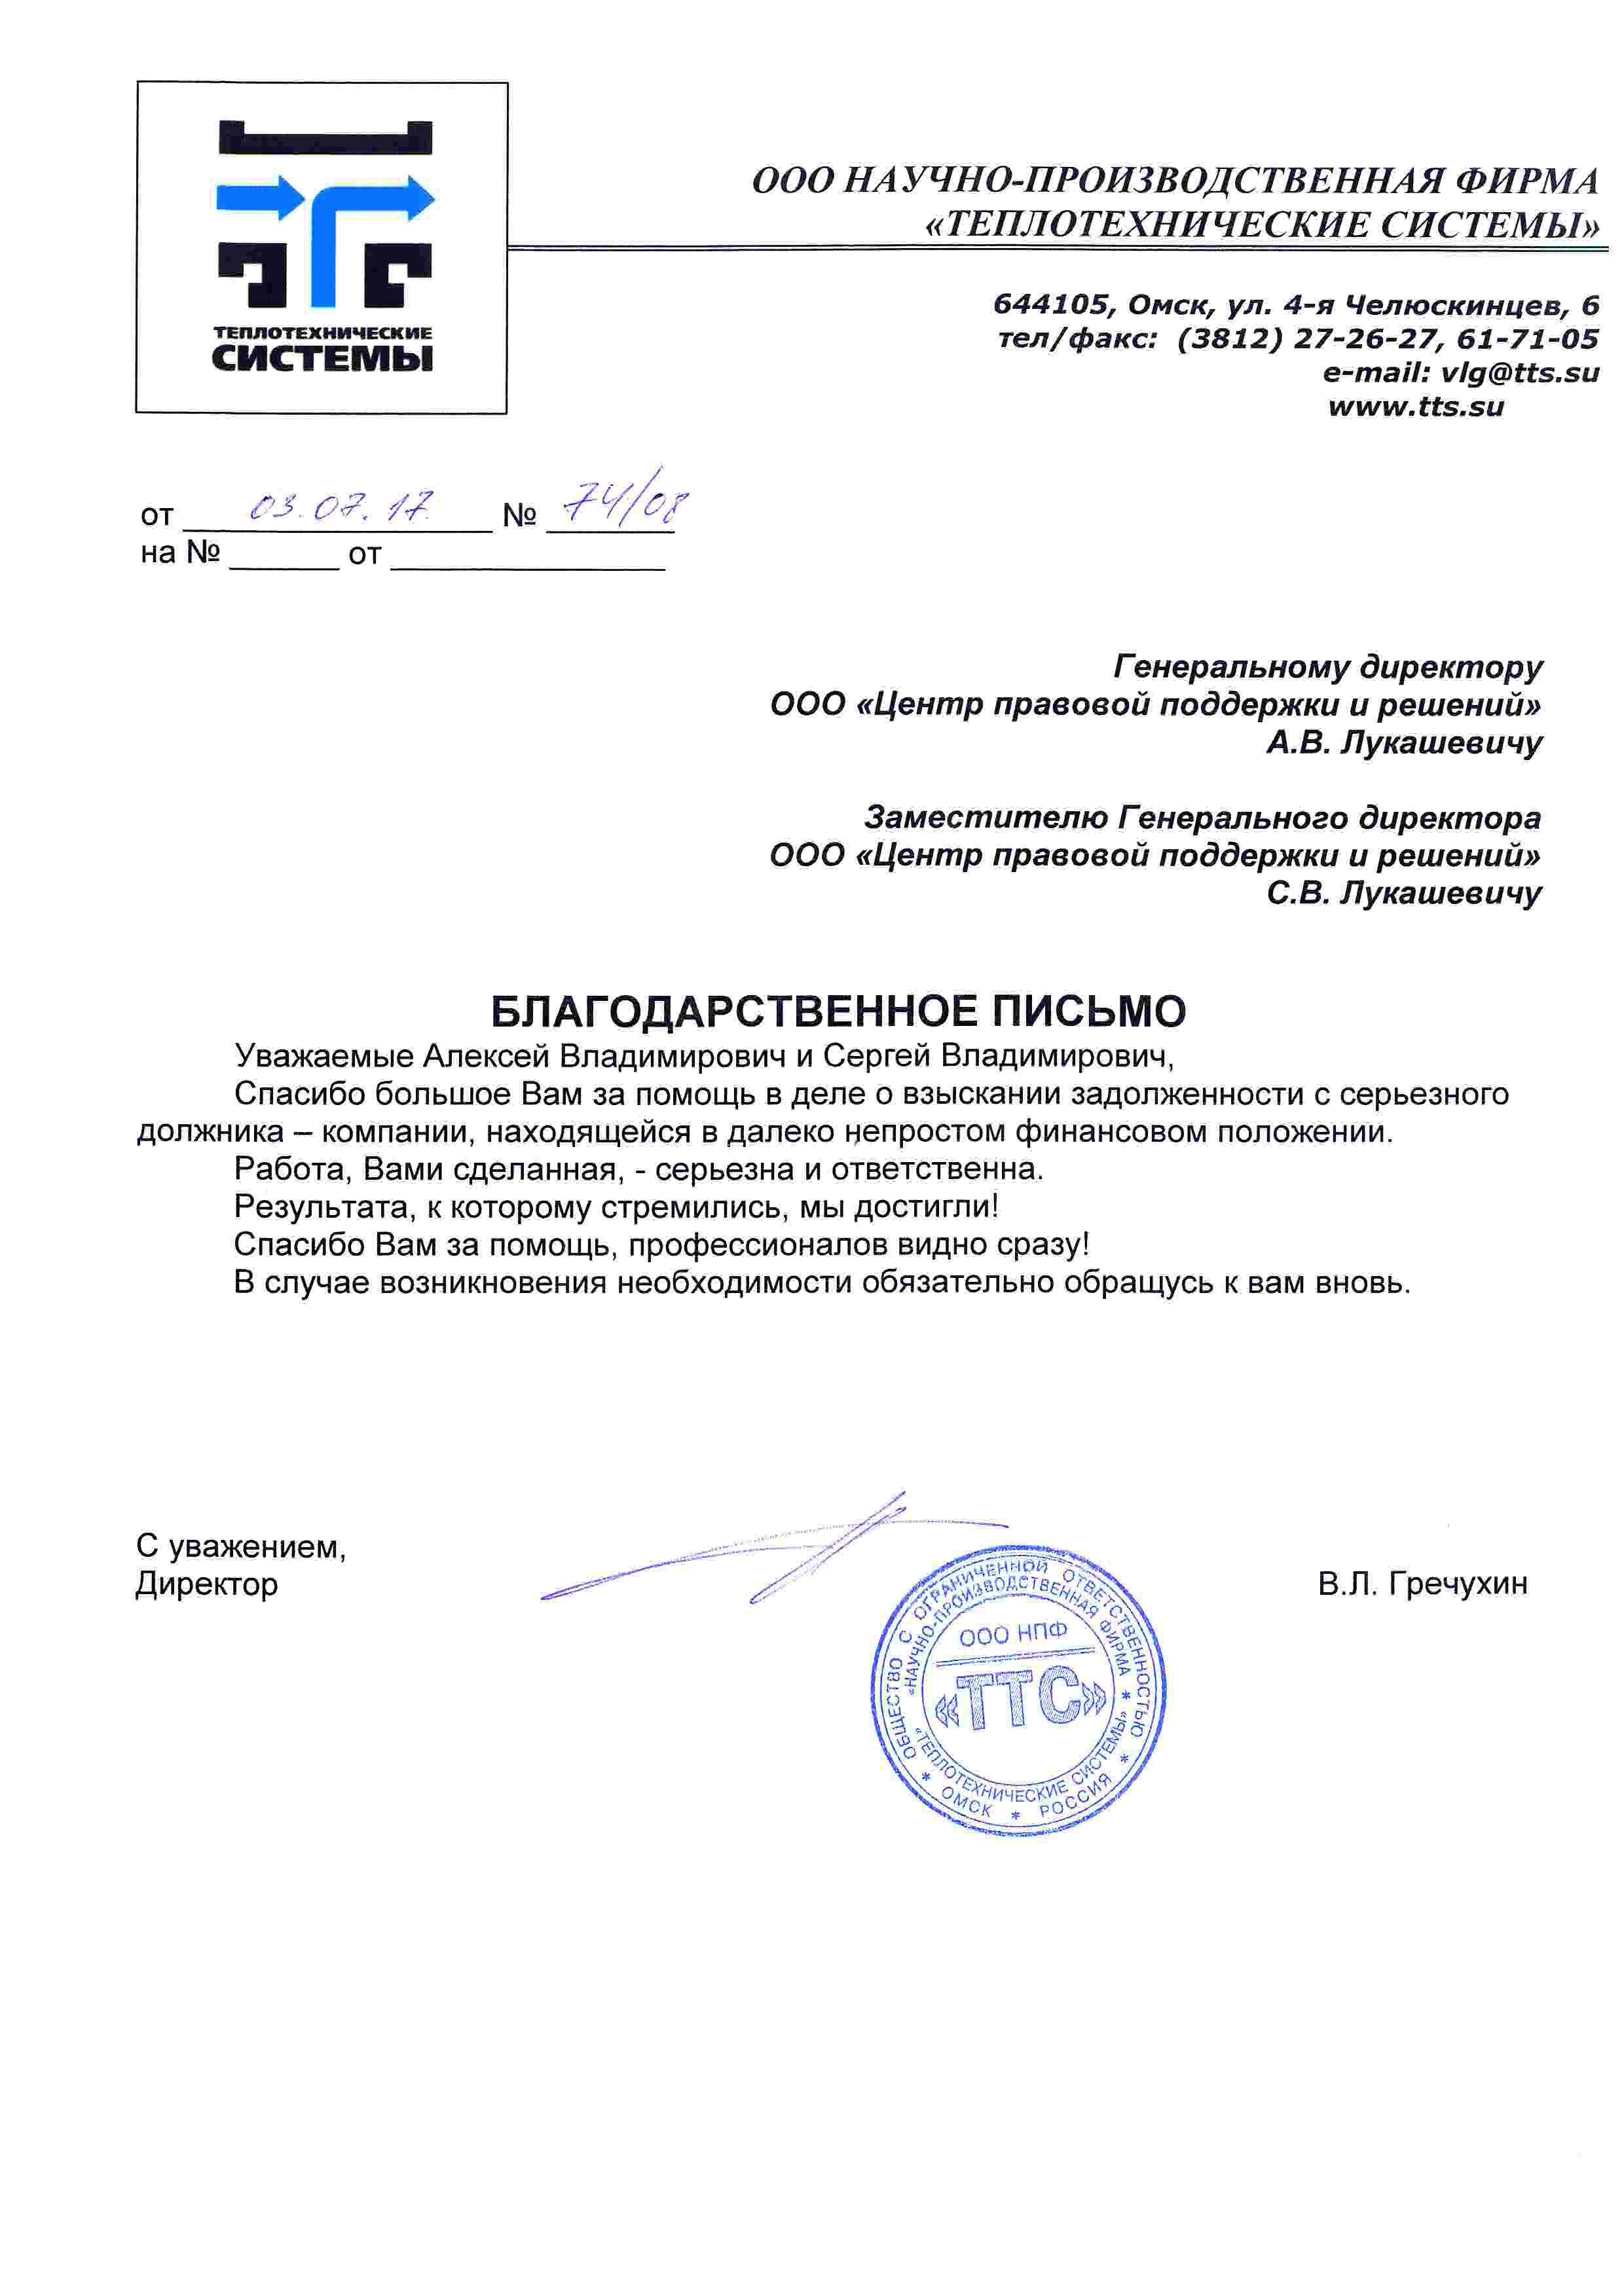 OOO Научно-производственная фирма «Теплотехнические системы» </br> (г. Омск)